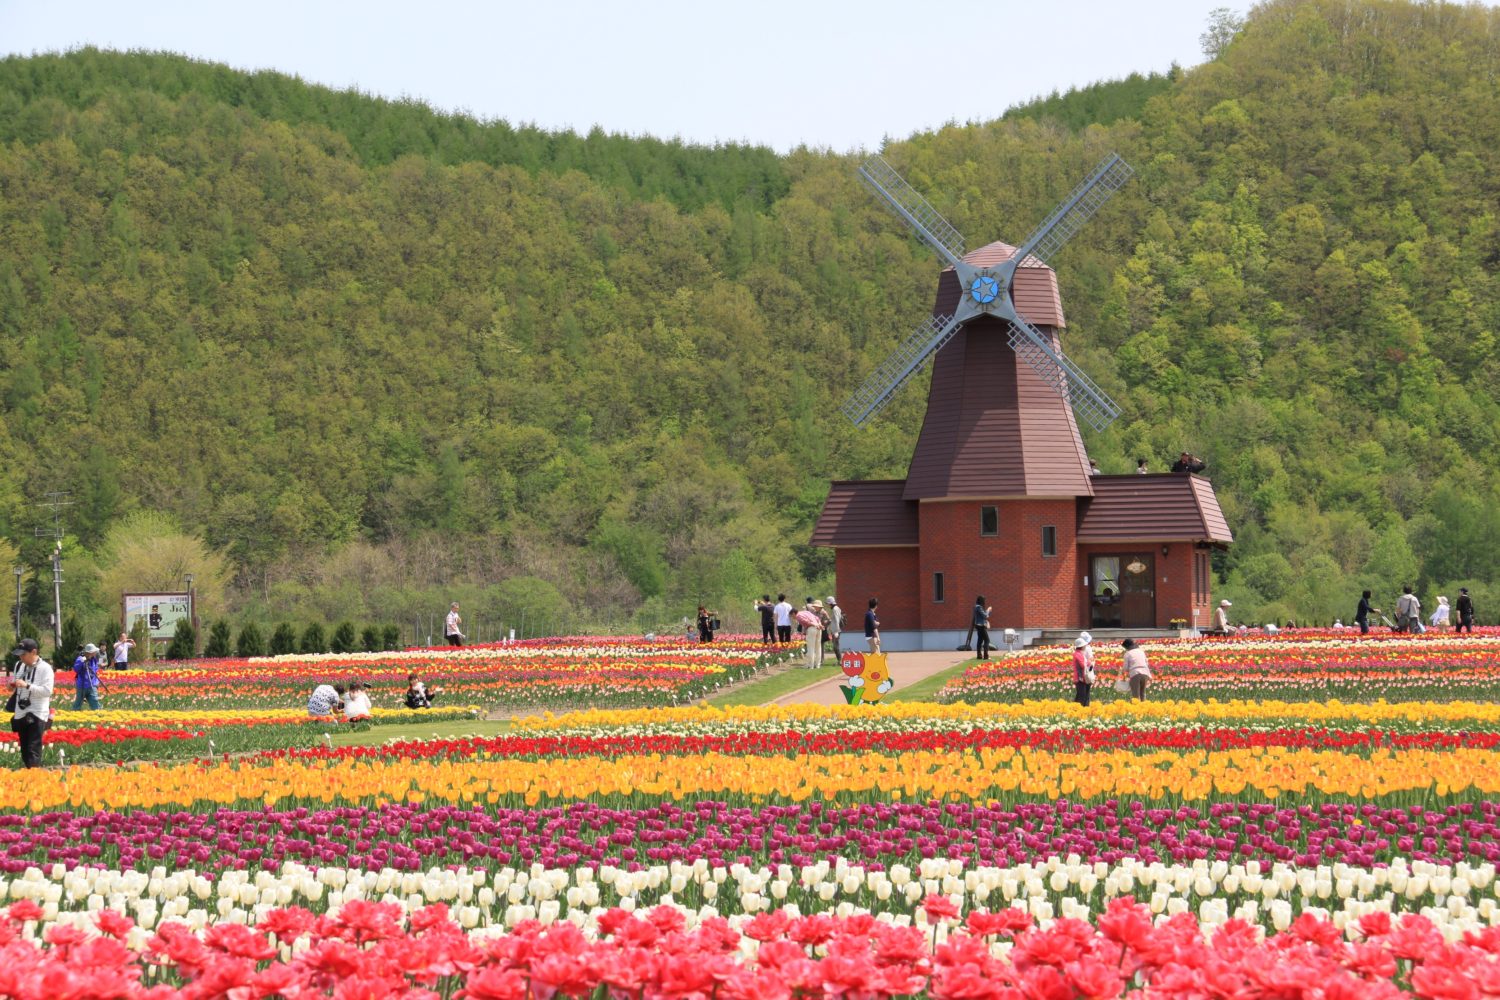 Yubestsu Tulip Farm